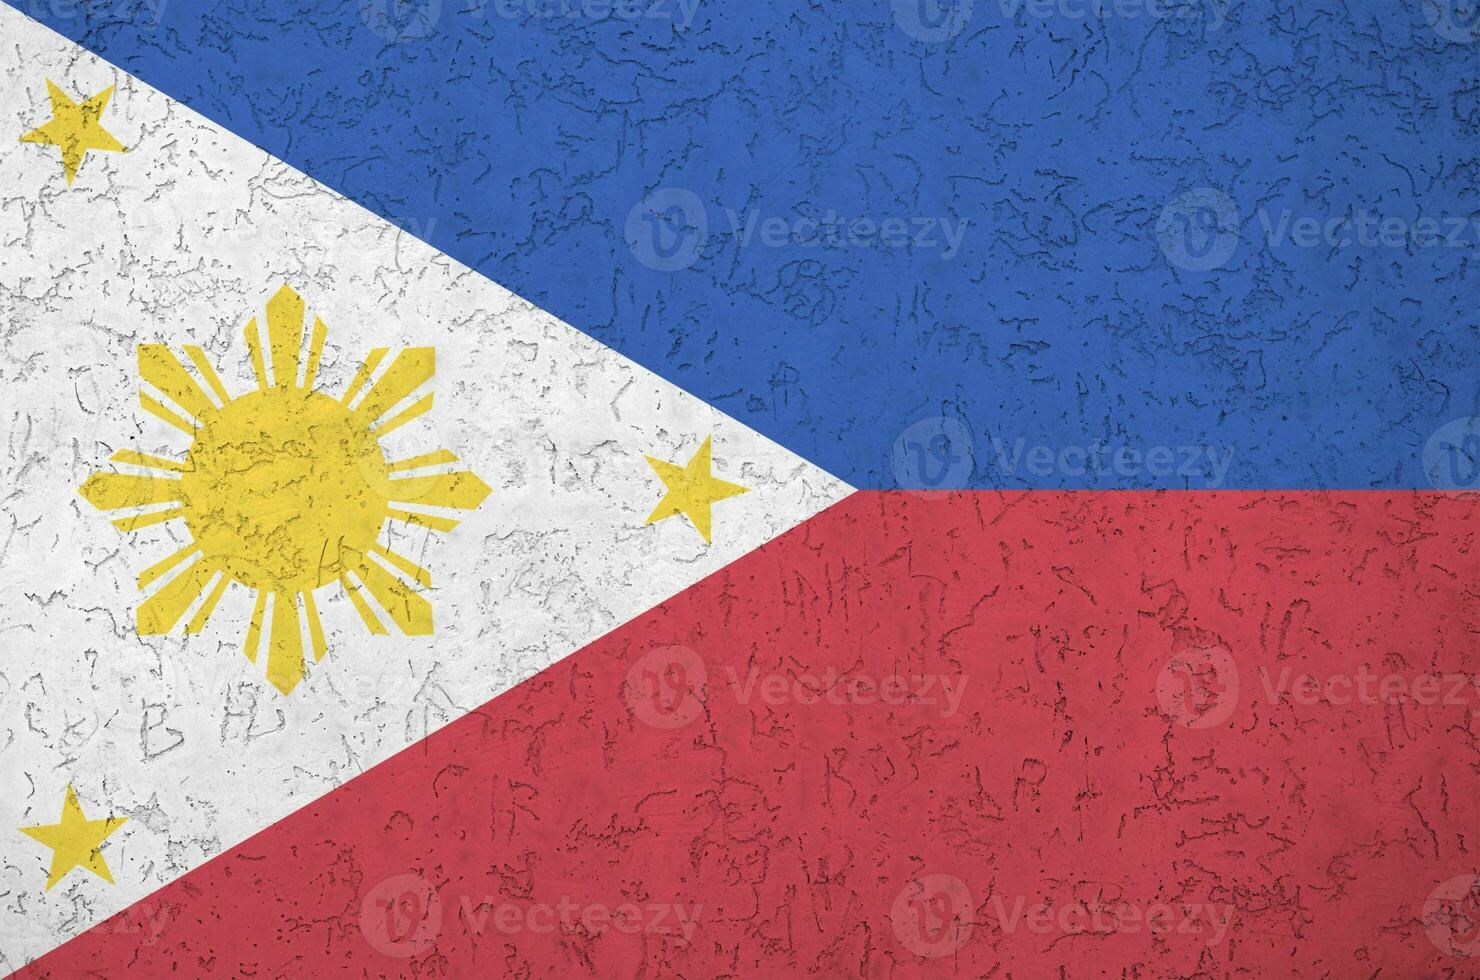 filippinerna flagga avbildad i ljus måla färger på gammal lättnad putsning vägg. texturerad baner på grov bakgrund foto